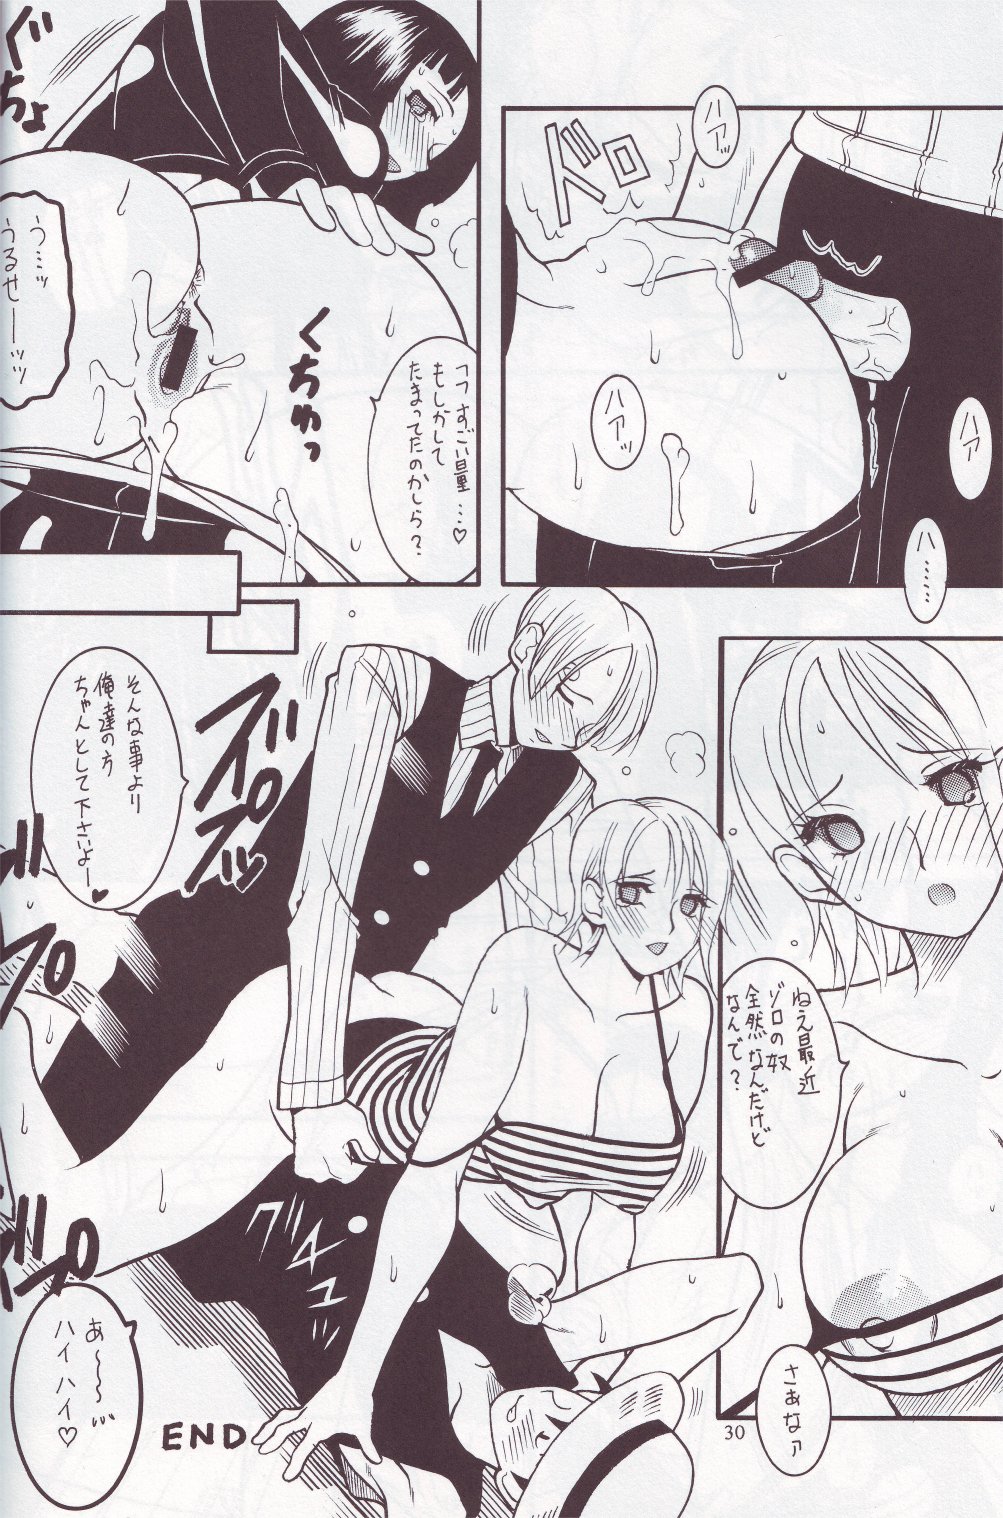 [SEMEDAIN G (Mizutani Mint, Mokkouyou Bond)] SEMEDAIN G WORKS vol.24 - Shuukan Shounen Jump Hon 4 (Bleach, One Piece) page 29 full